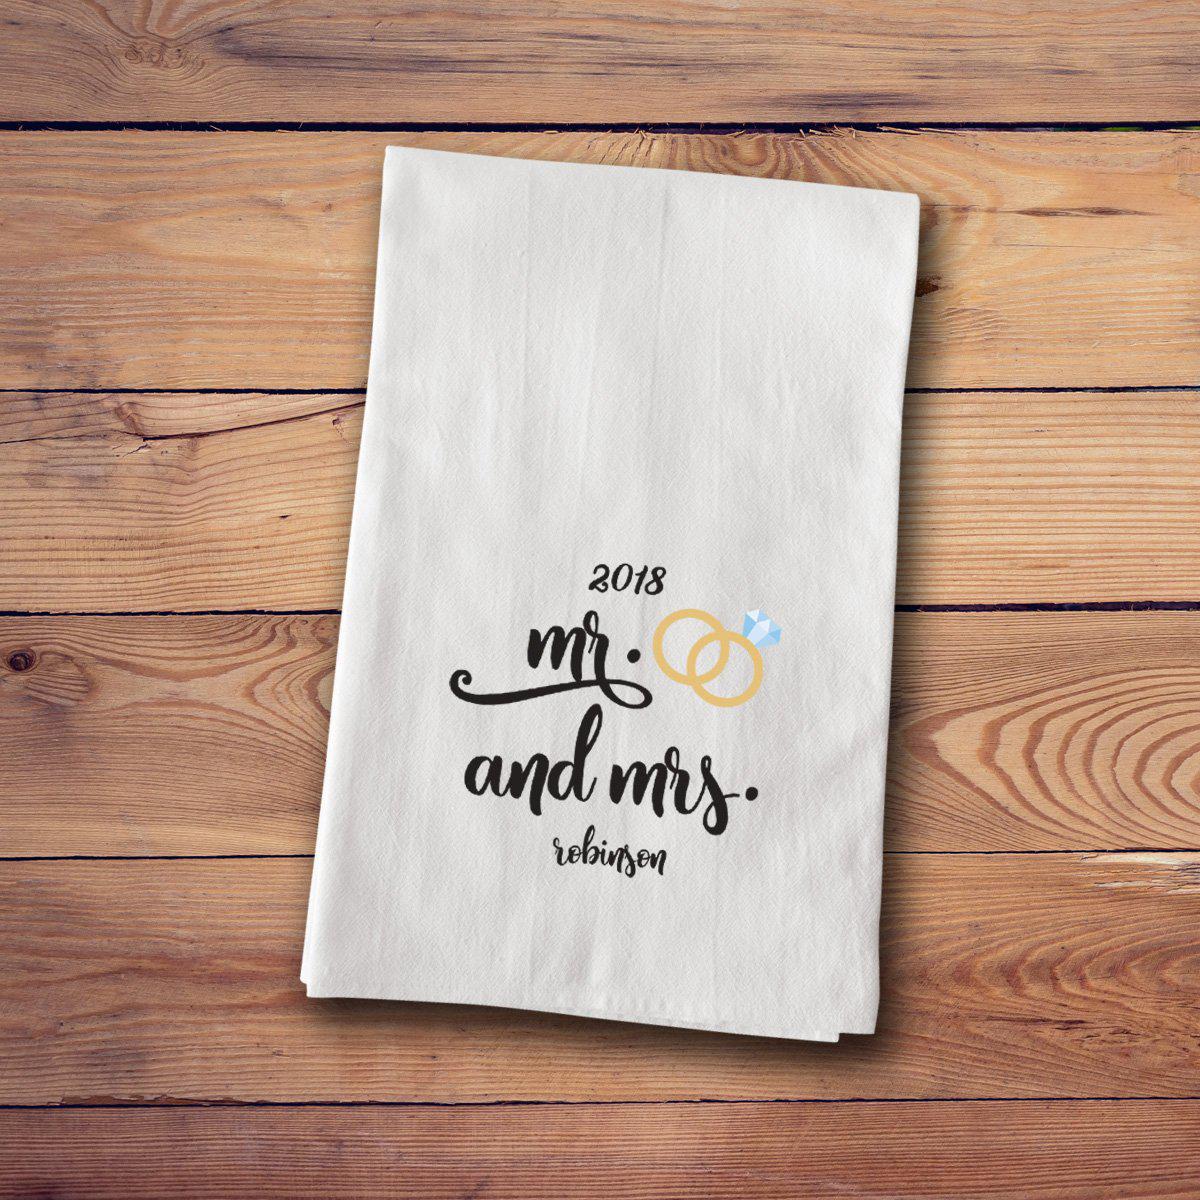 Mr. & Mrs. Mistletoe Wreath Personalized Kitchen Tea Towels